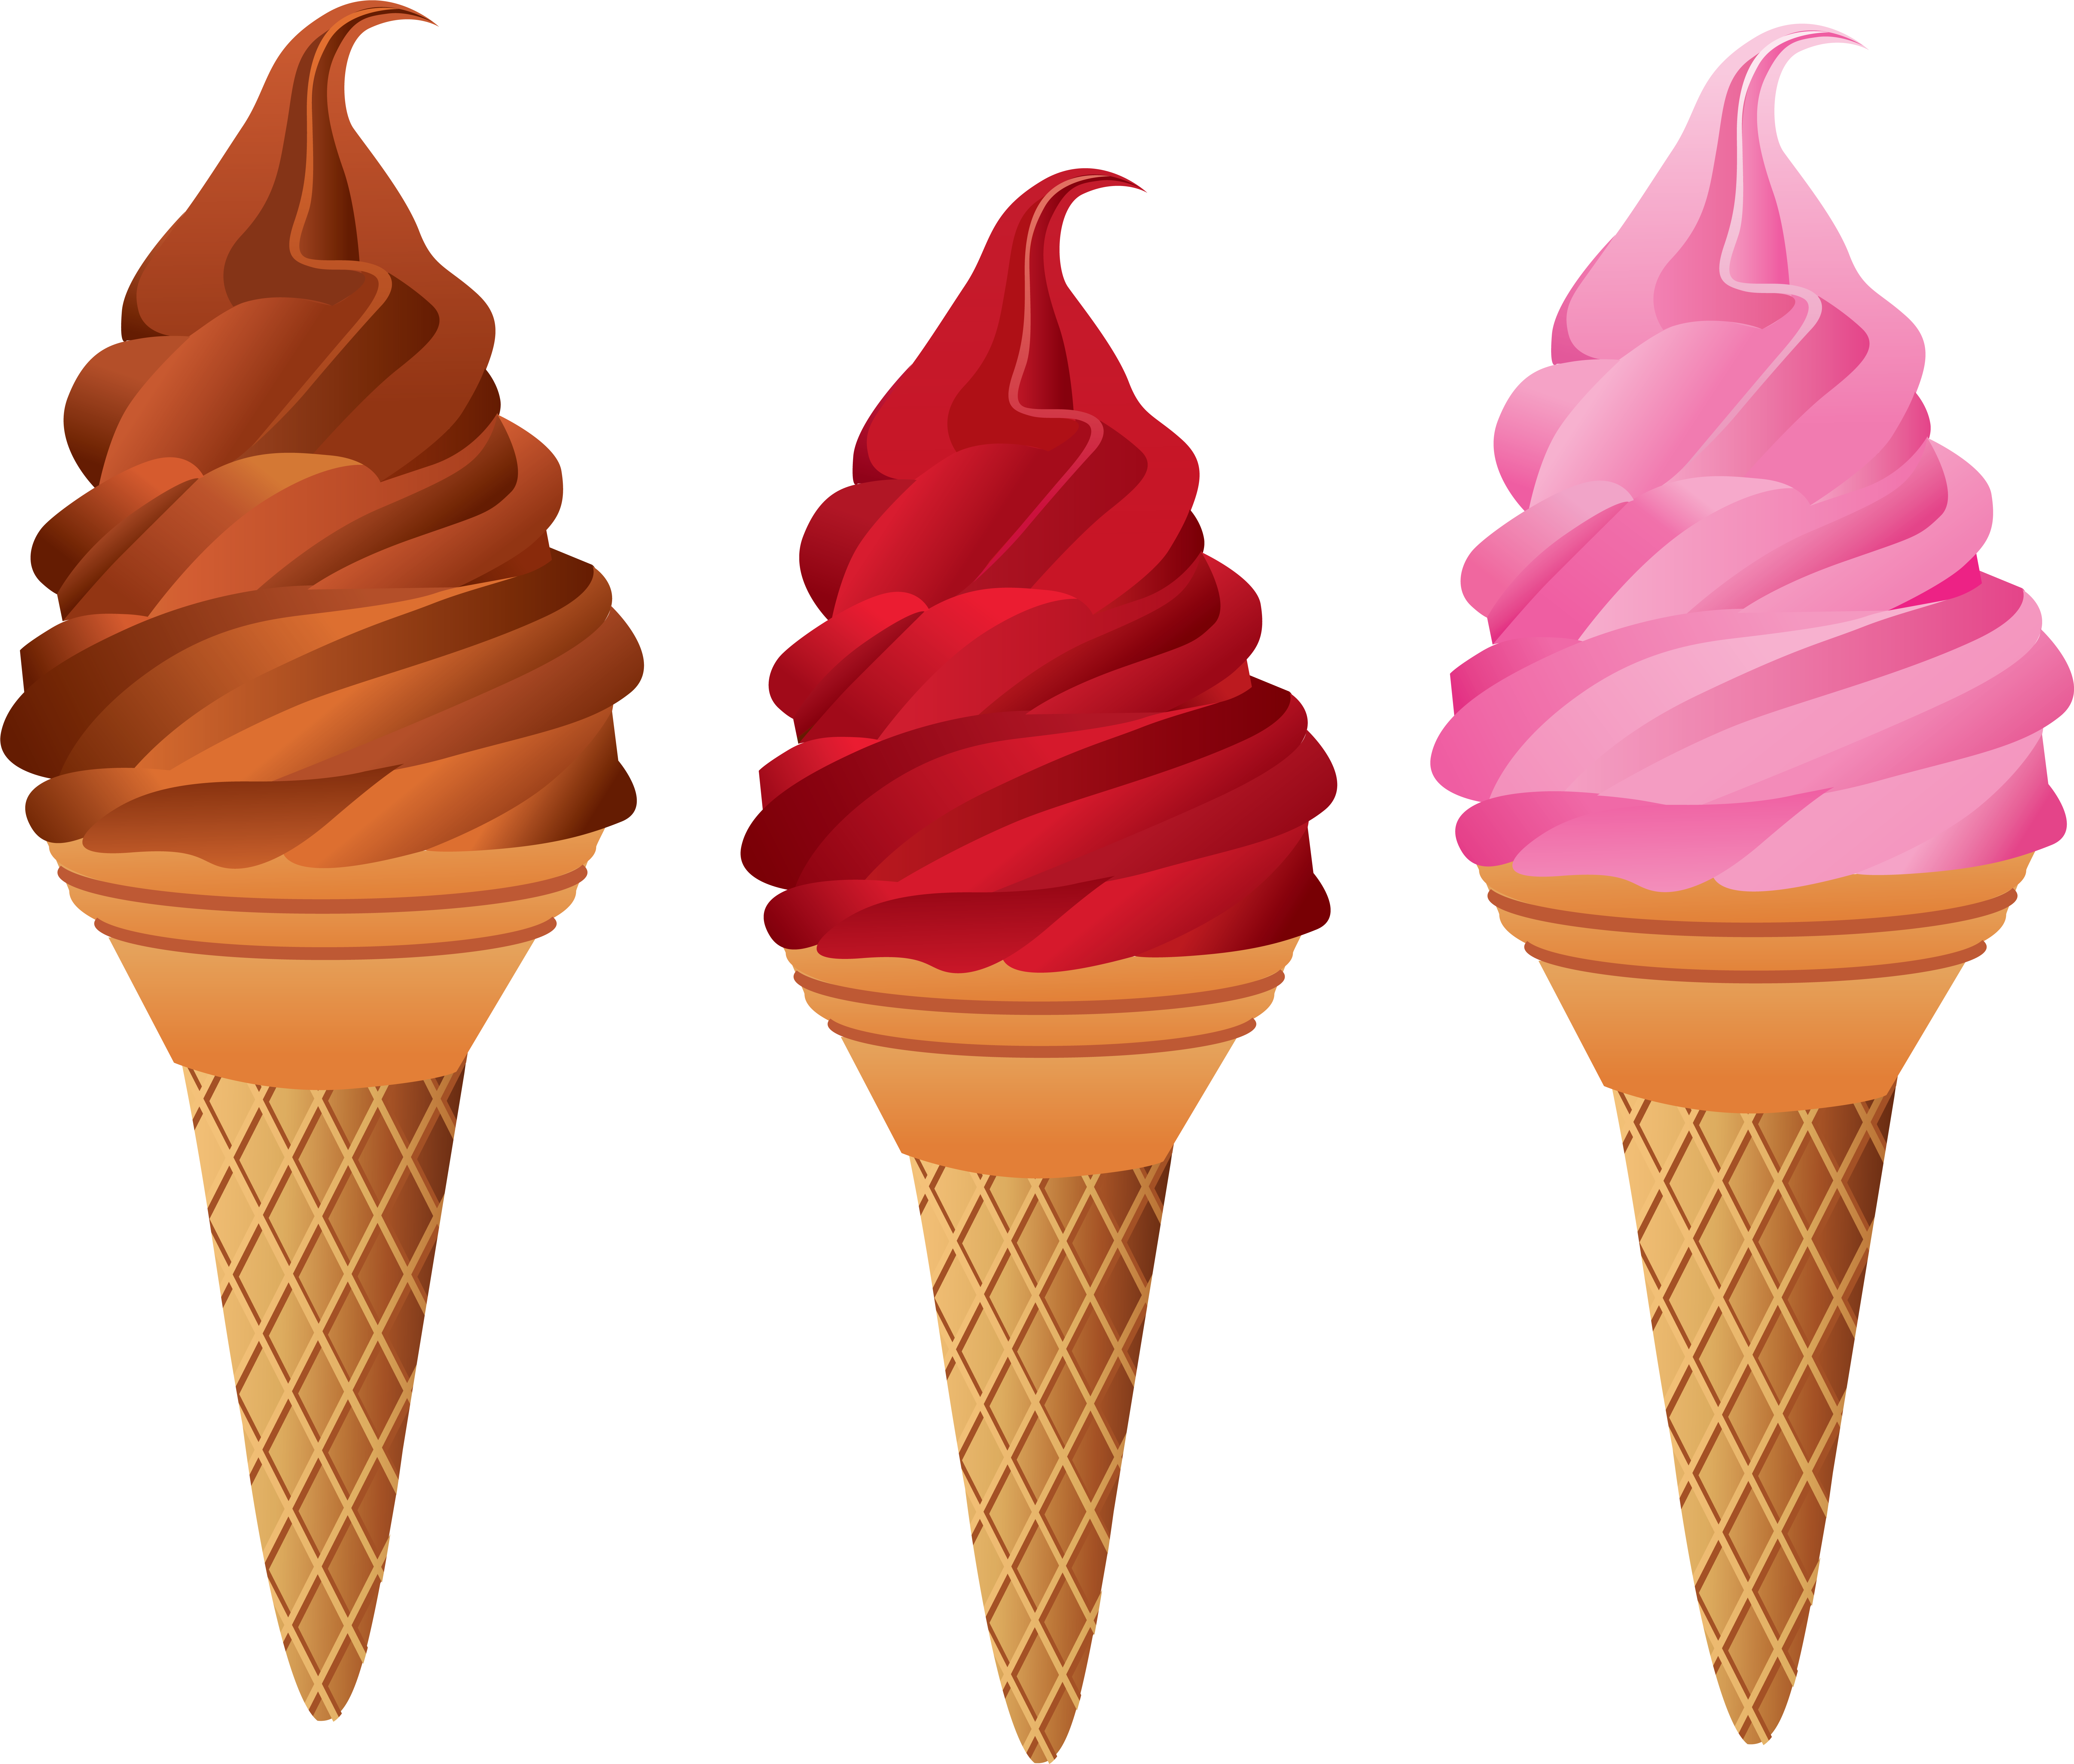 Ice Cream Cones Chocolate Ice Cream Sundae - Sweet Food Clip Art (7013x5888)